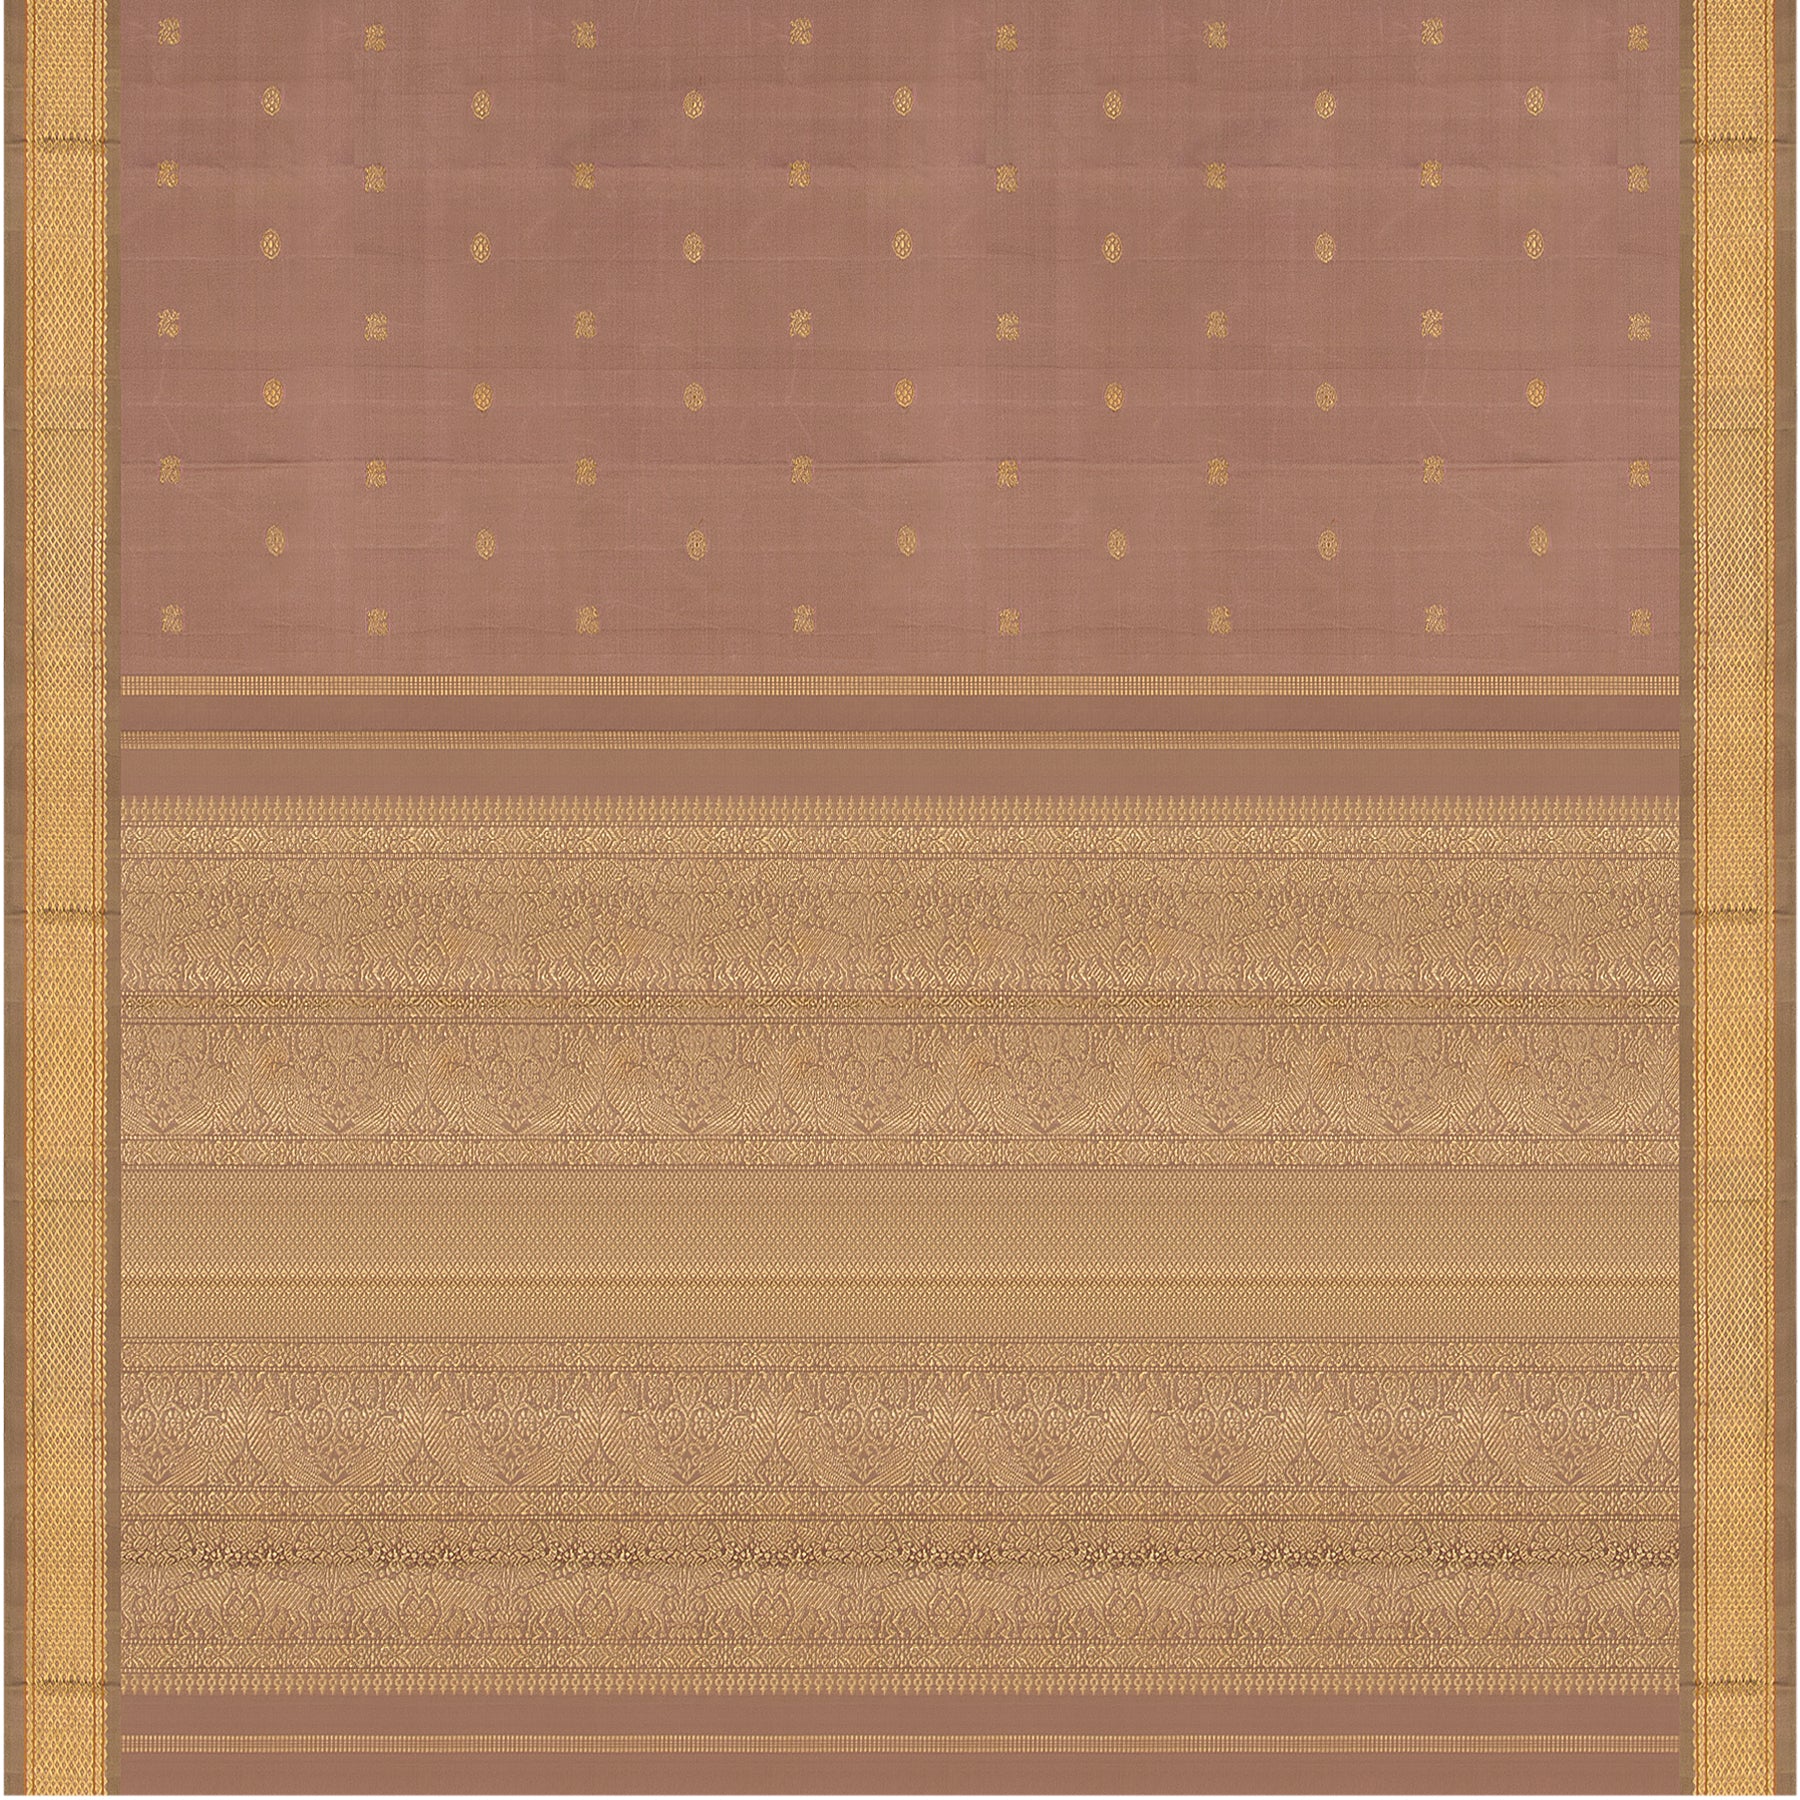 Kanakavalli Kanjivaram Silk Sari 22-040-HS001-04793 - Full View